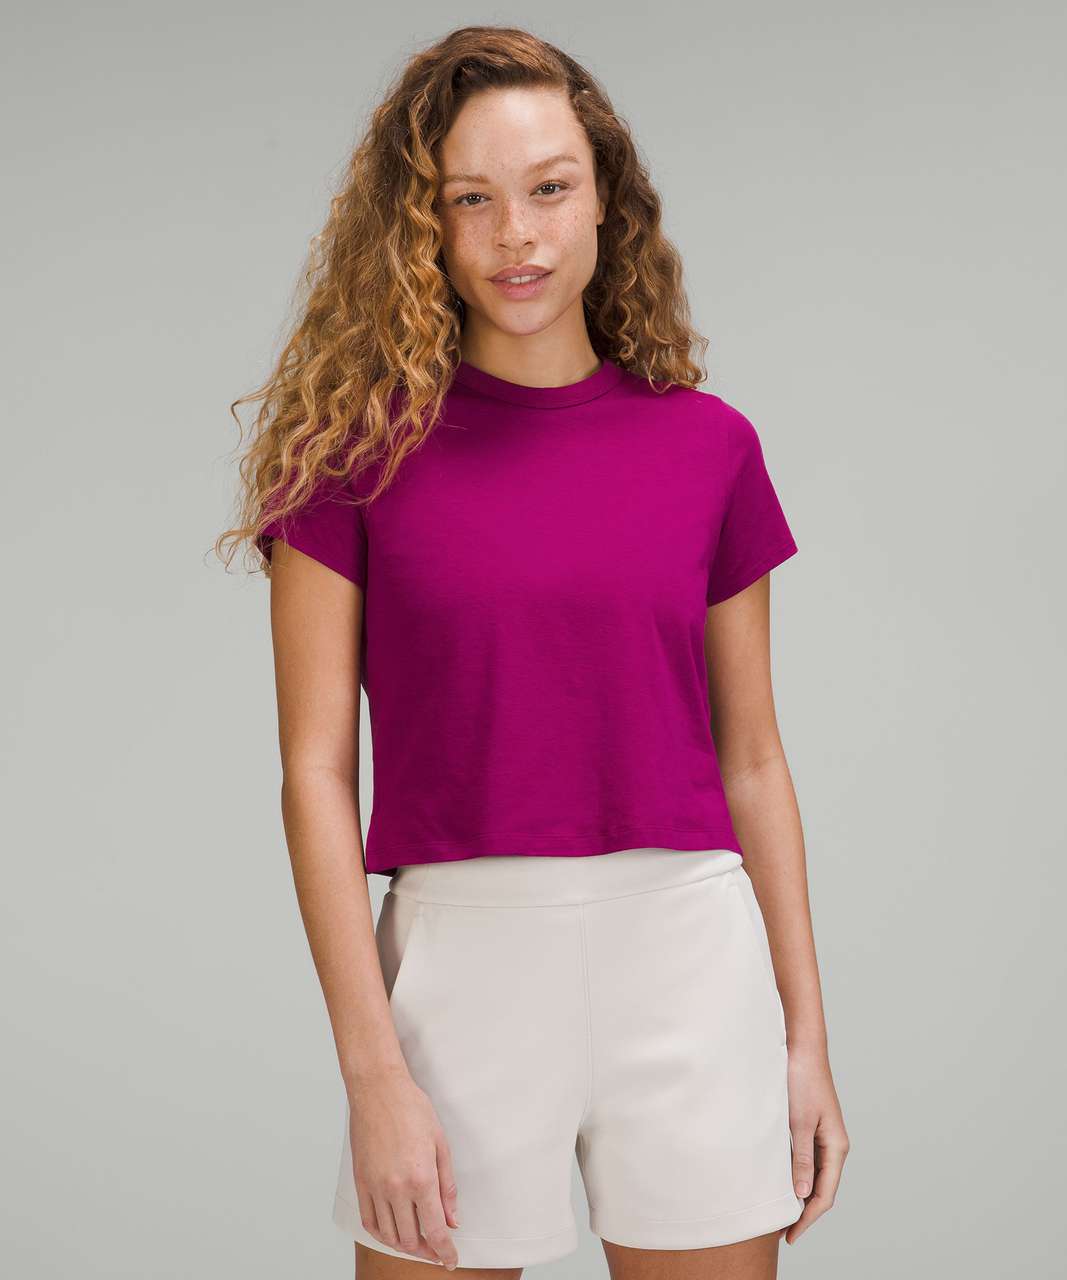 Lululemon Classic-Fit Cotton-Blend T-Shirt - Magenta Purple